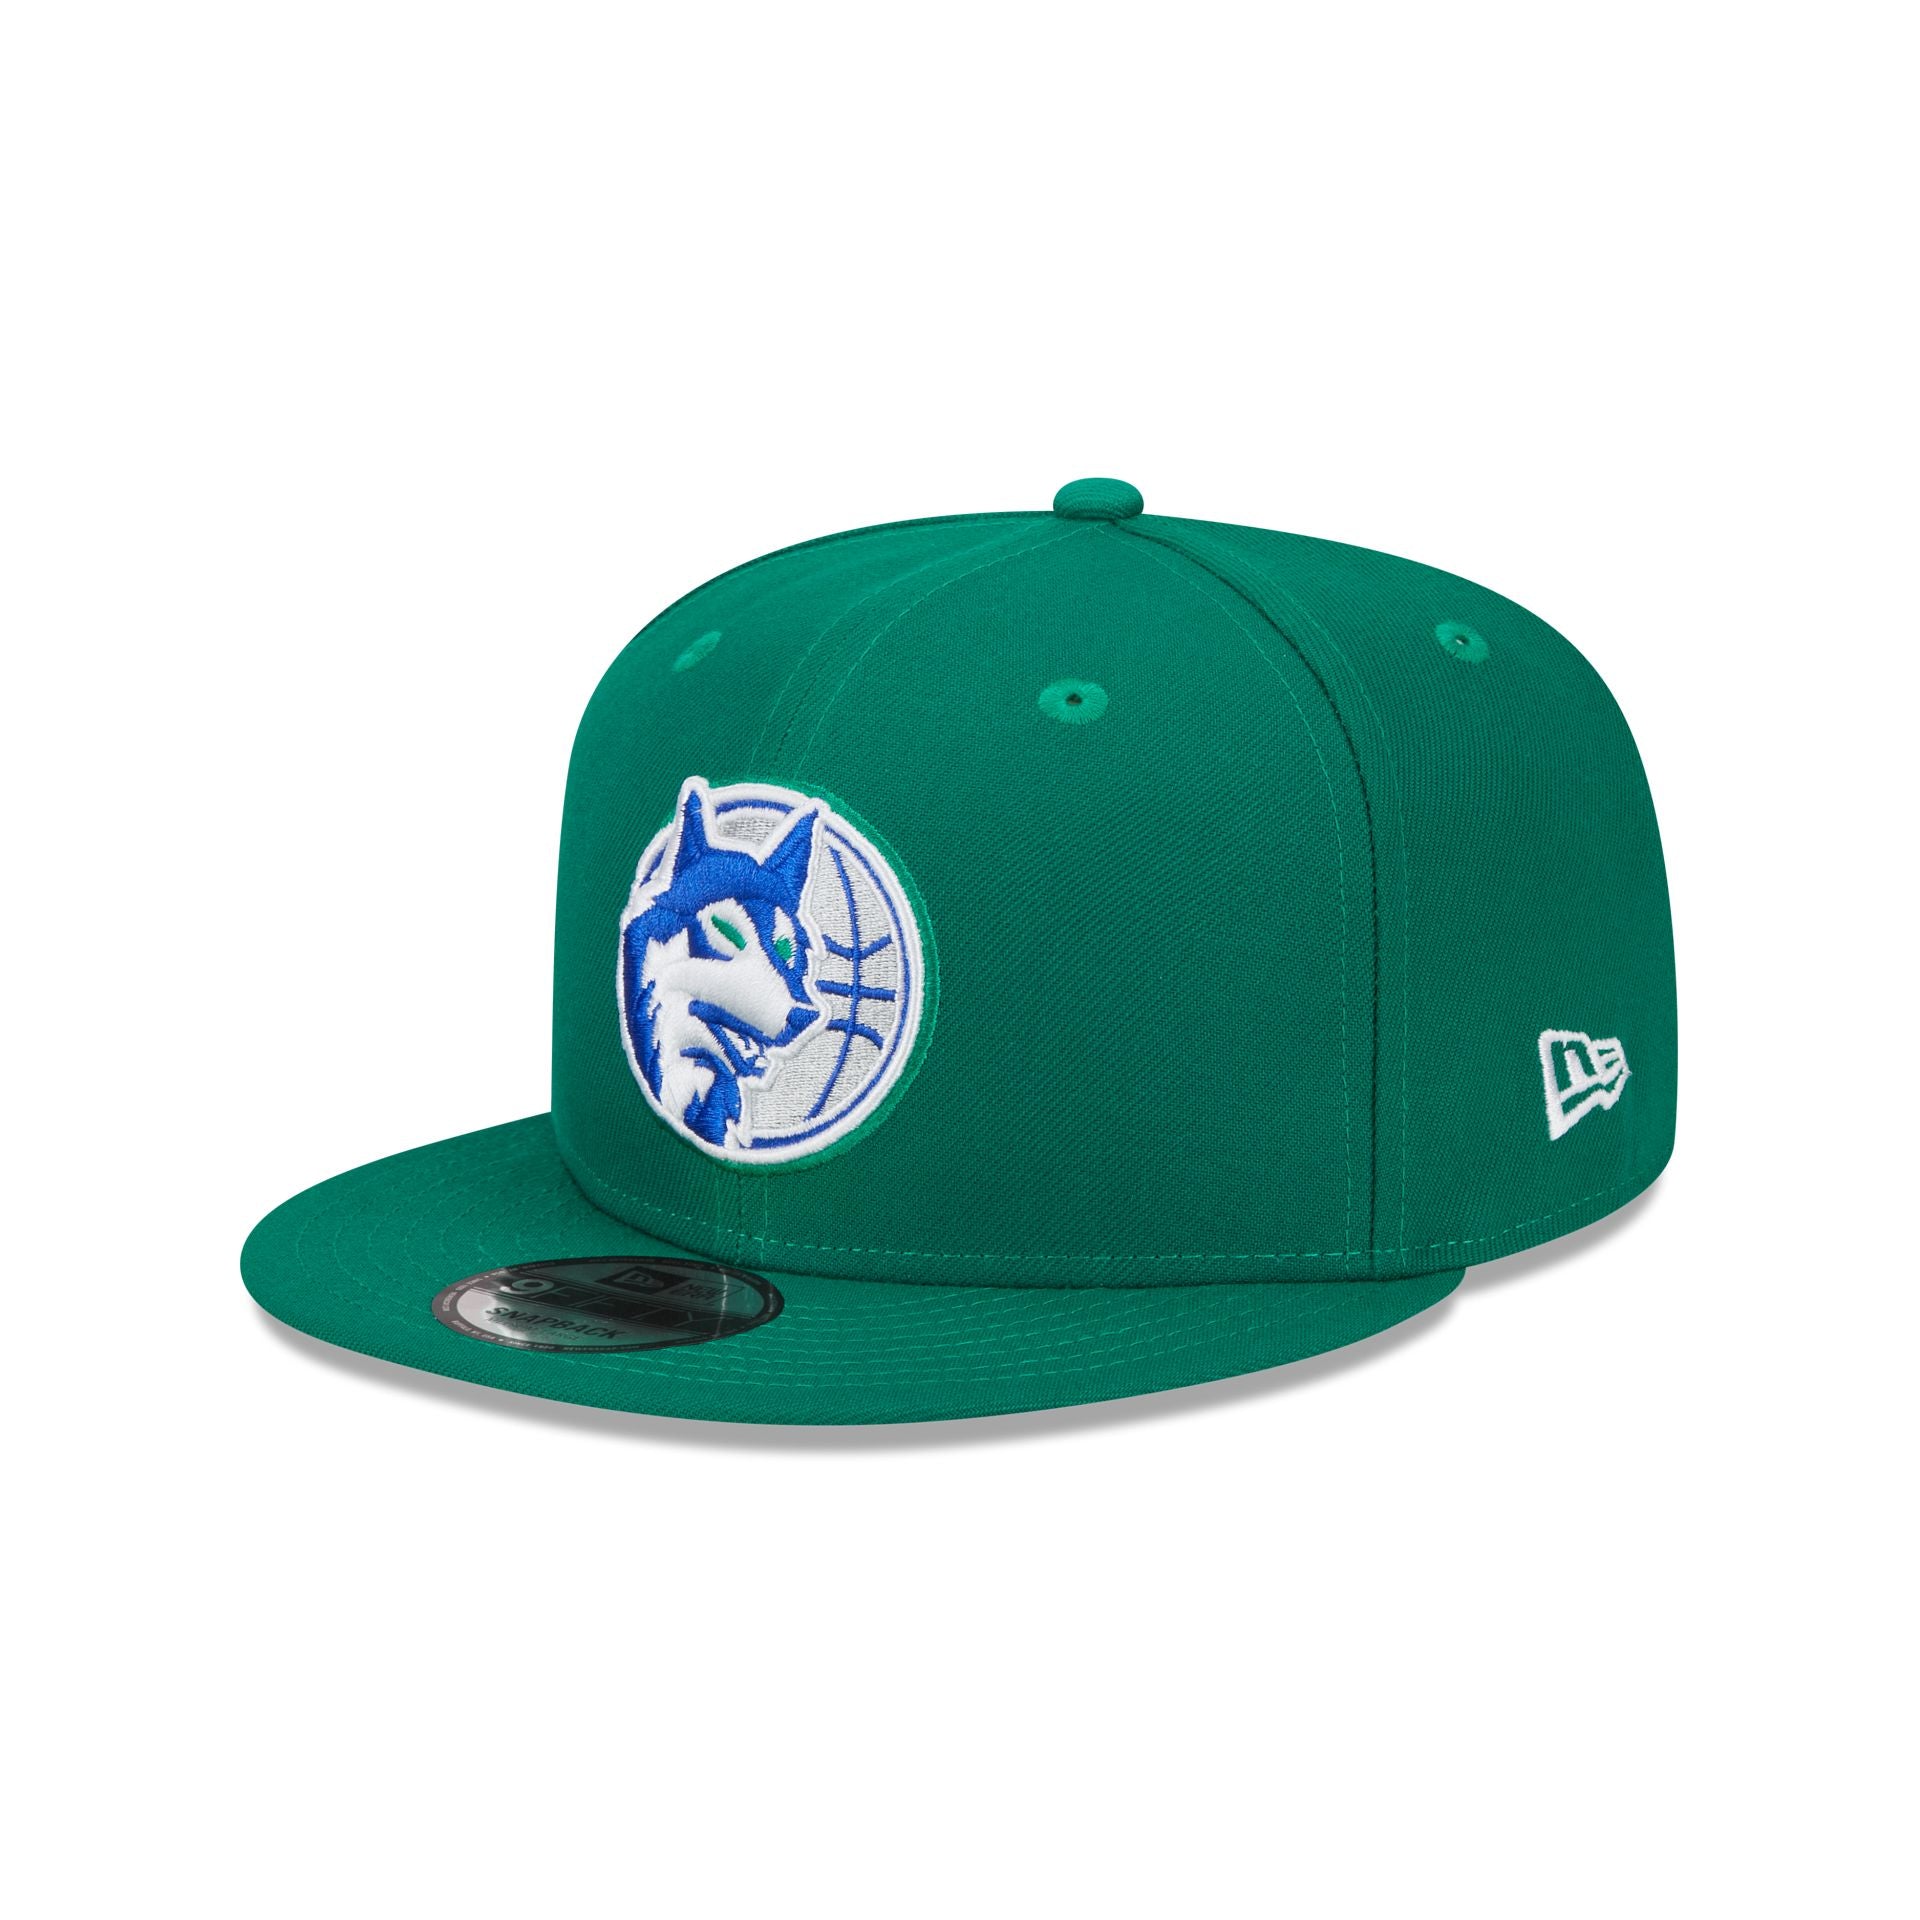 2023 NBA Classic Edition Hats – New Era Cap